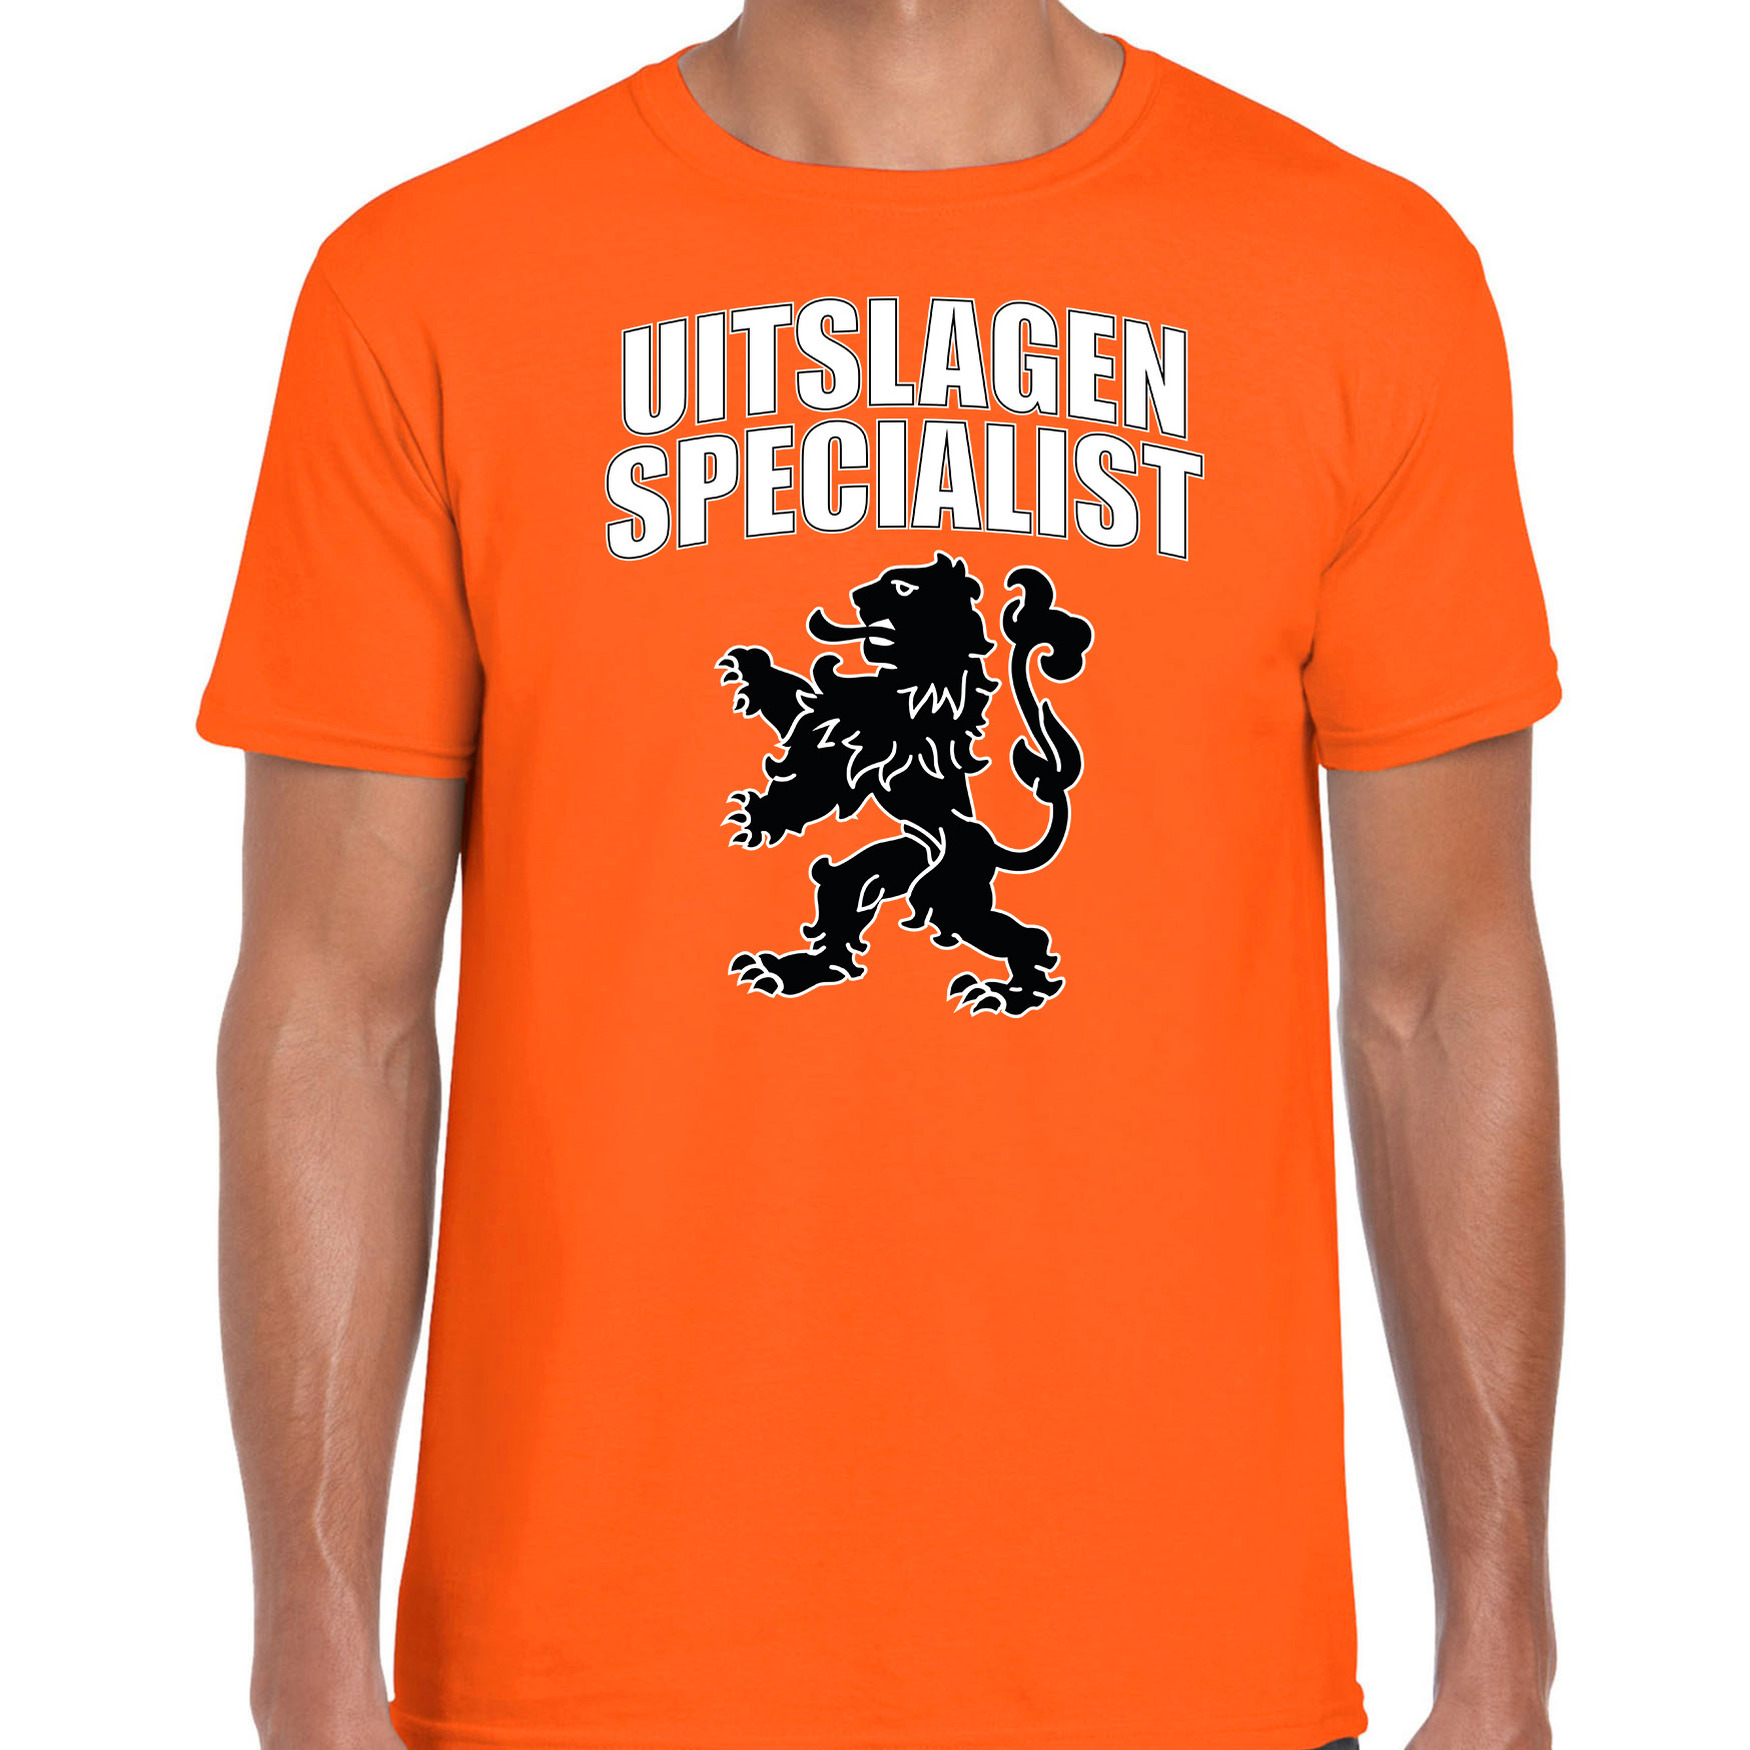 Uitslagen specialist met leeuw oranje t-shirt Holland-Nederland supporter EK- WK voor heren